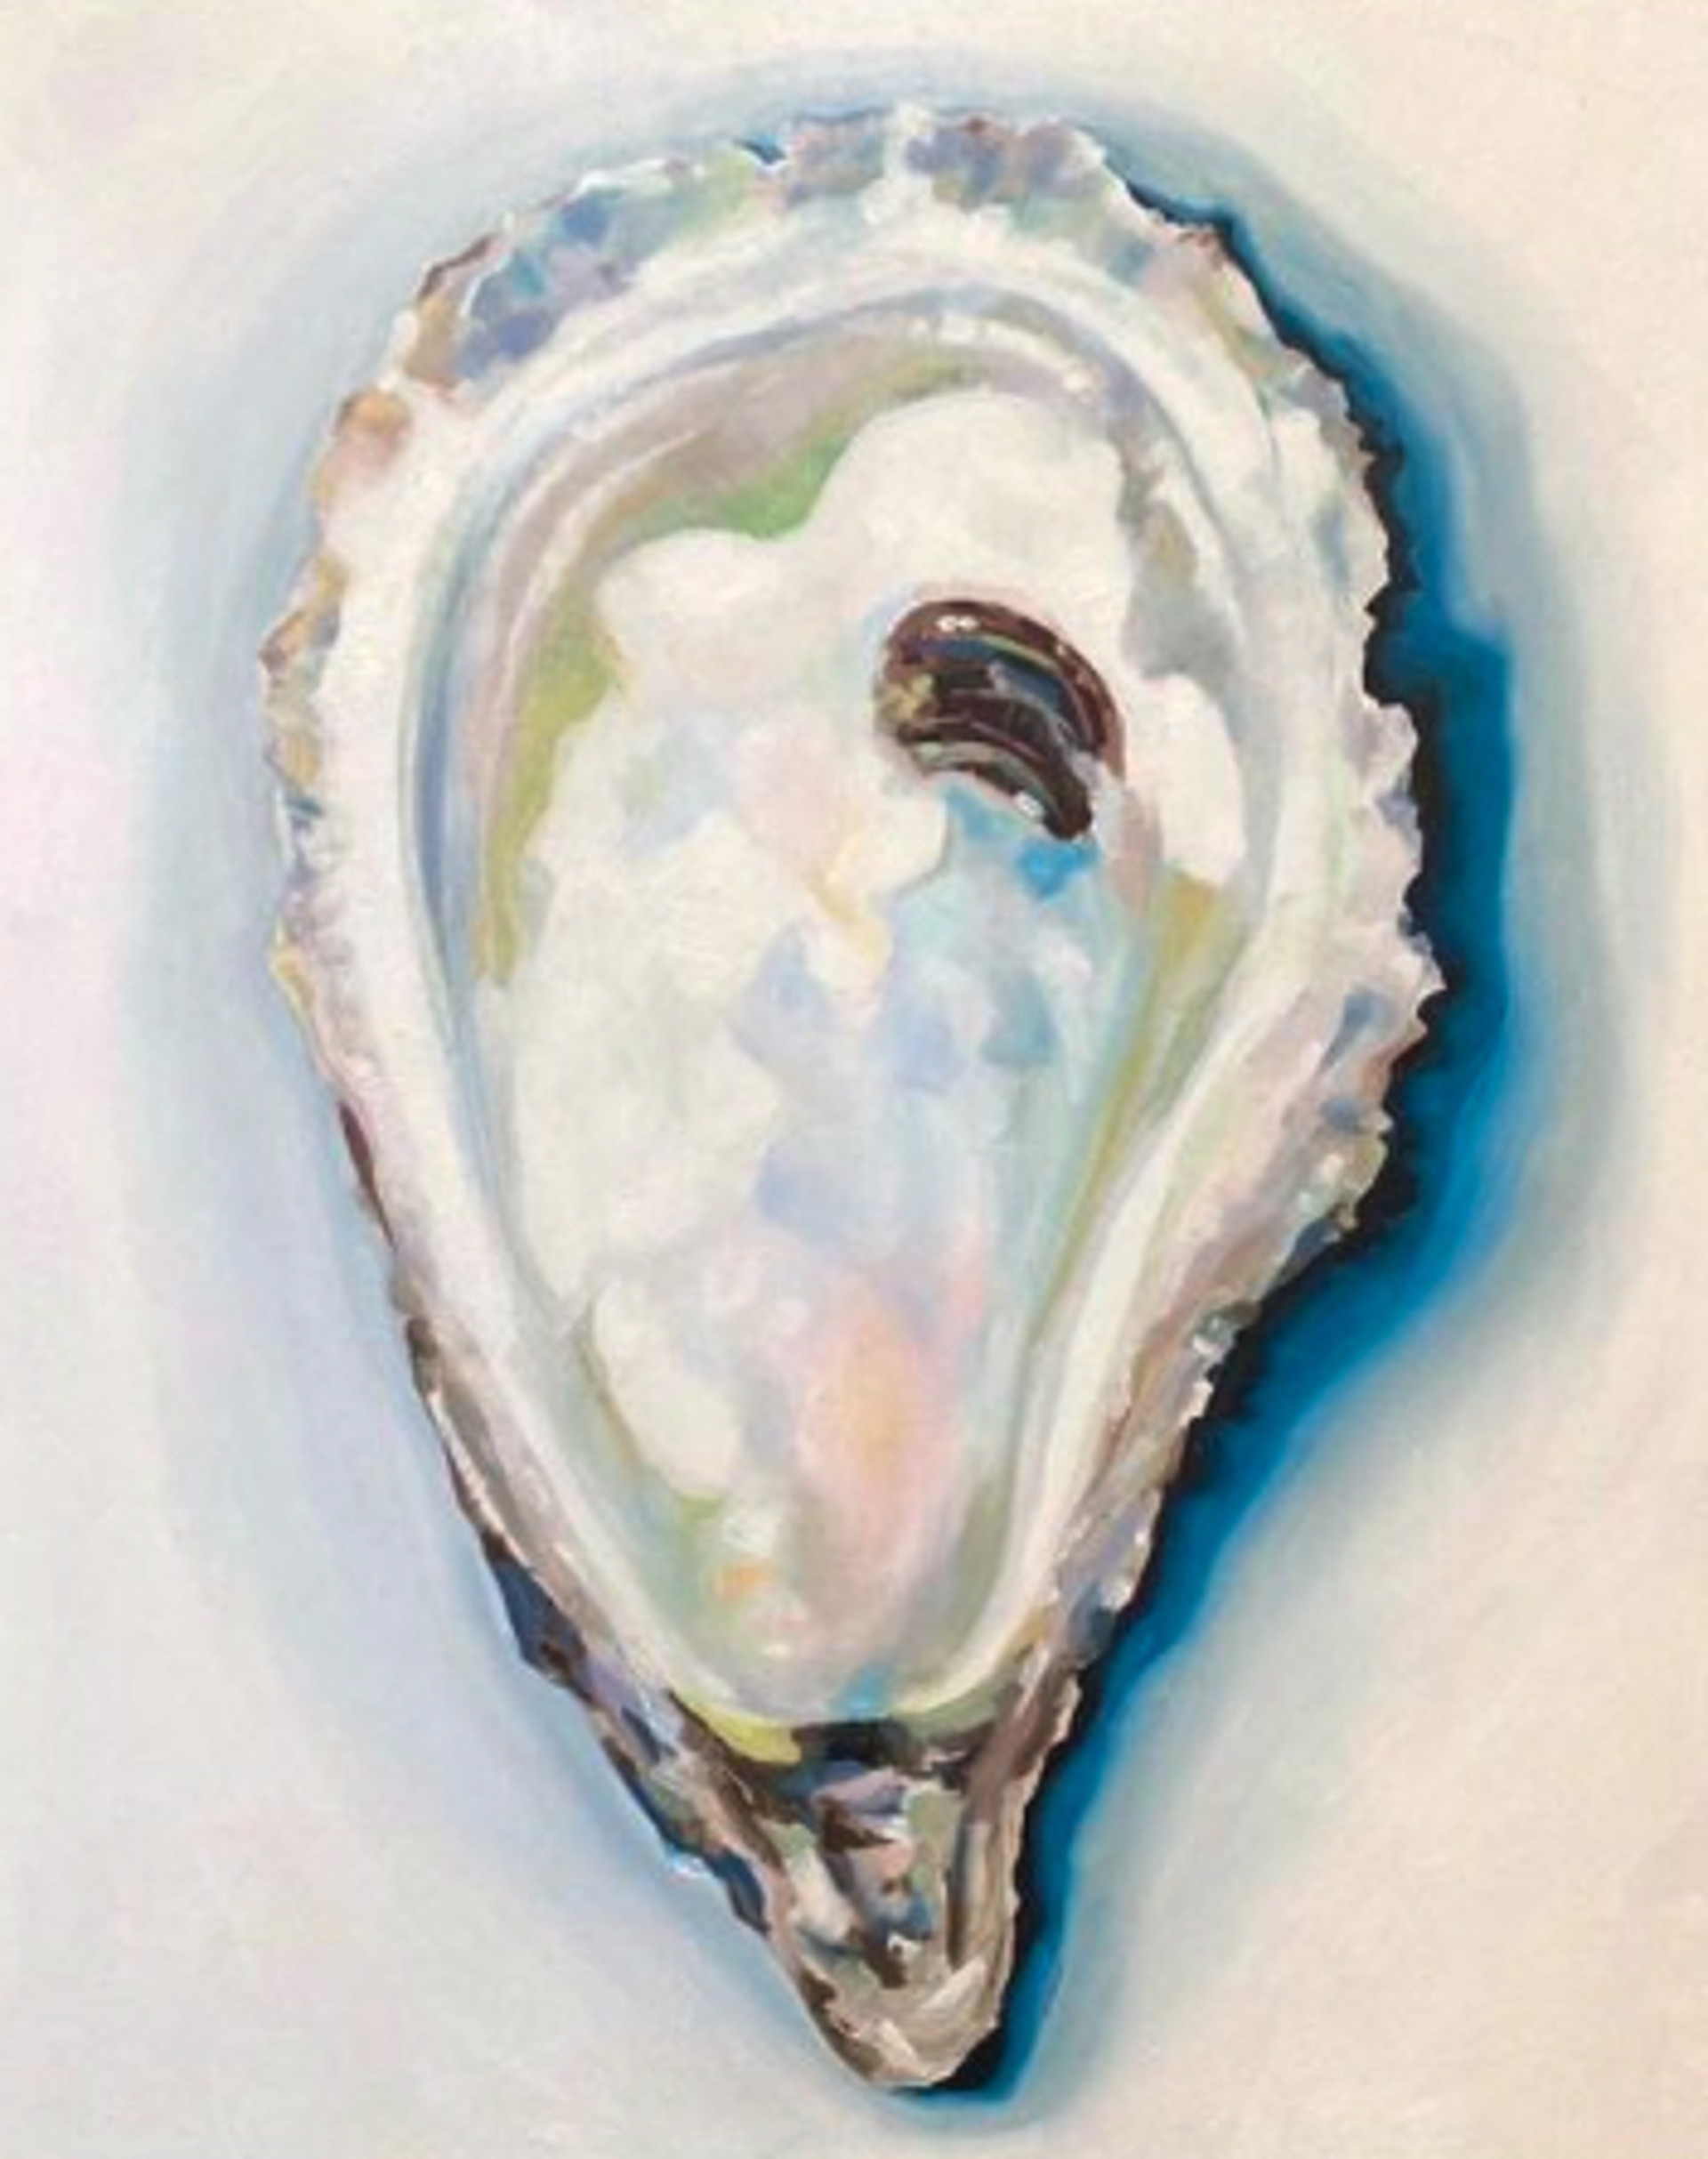 Lemon Oyster by Ariel Harder